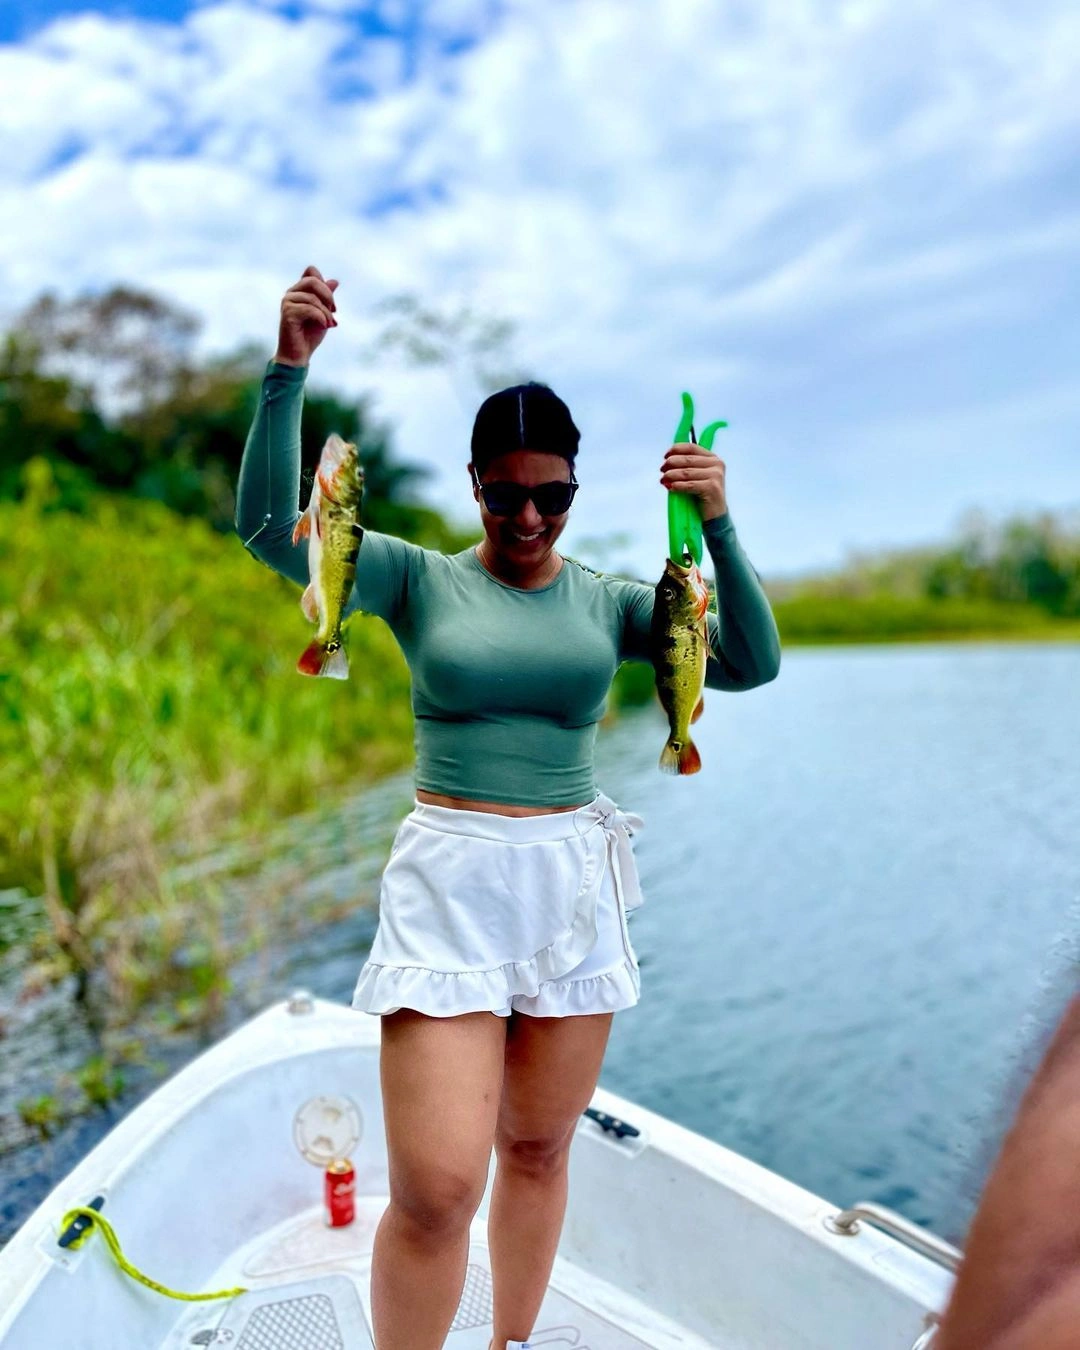 Disfrutando de Capturas de Sargento en Lago Gatun - En la foto, nuestra amiga sonríe radiante mientras sostiene con orgullo dos sargentos recién capturados en el Lago Gatún, Panamá. Su expresión refleja la alegría y satisfacción de un día exitoso de pesca en uno de los parajes más hermosos del país. ¡La esencia pura de la aventura panameña! #girlsfishtoo